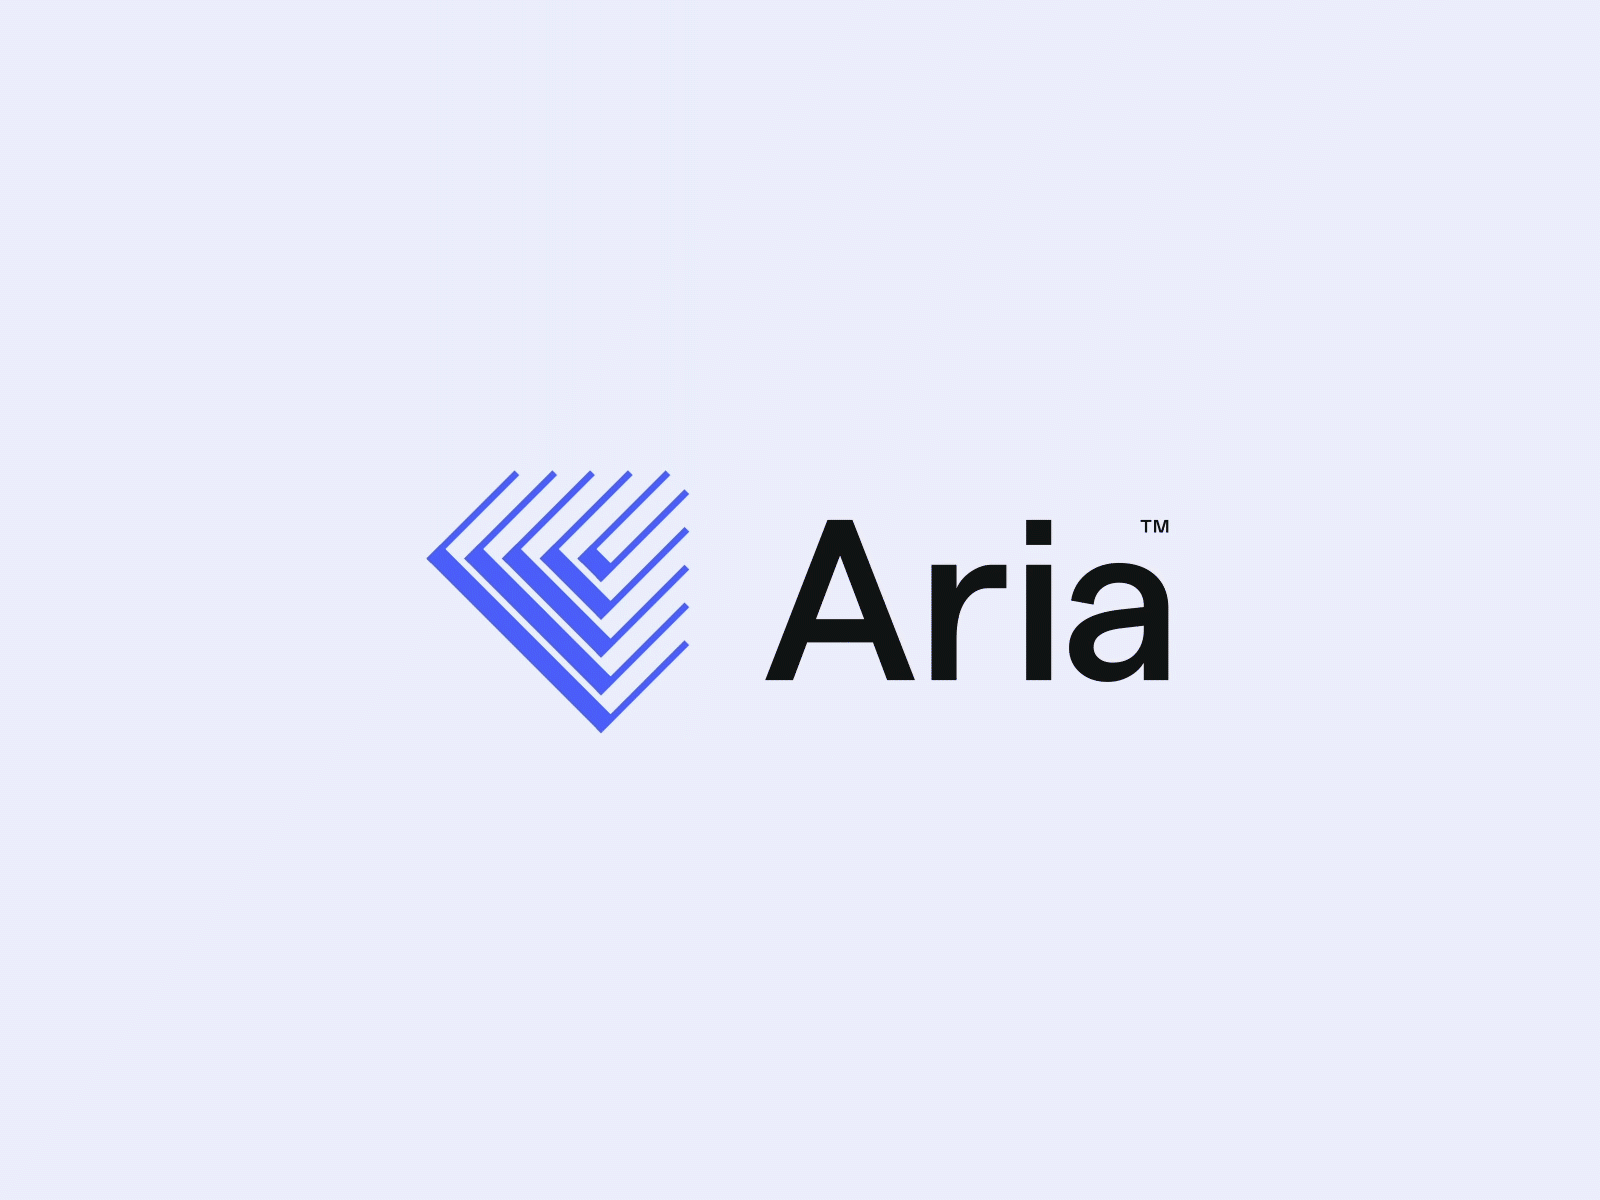 Aria arrow branding concept design identity logo monogram symbol type typography